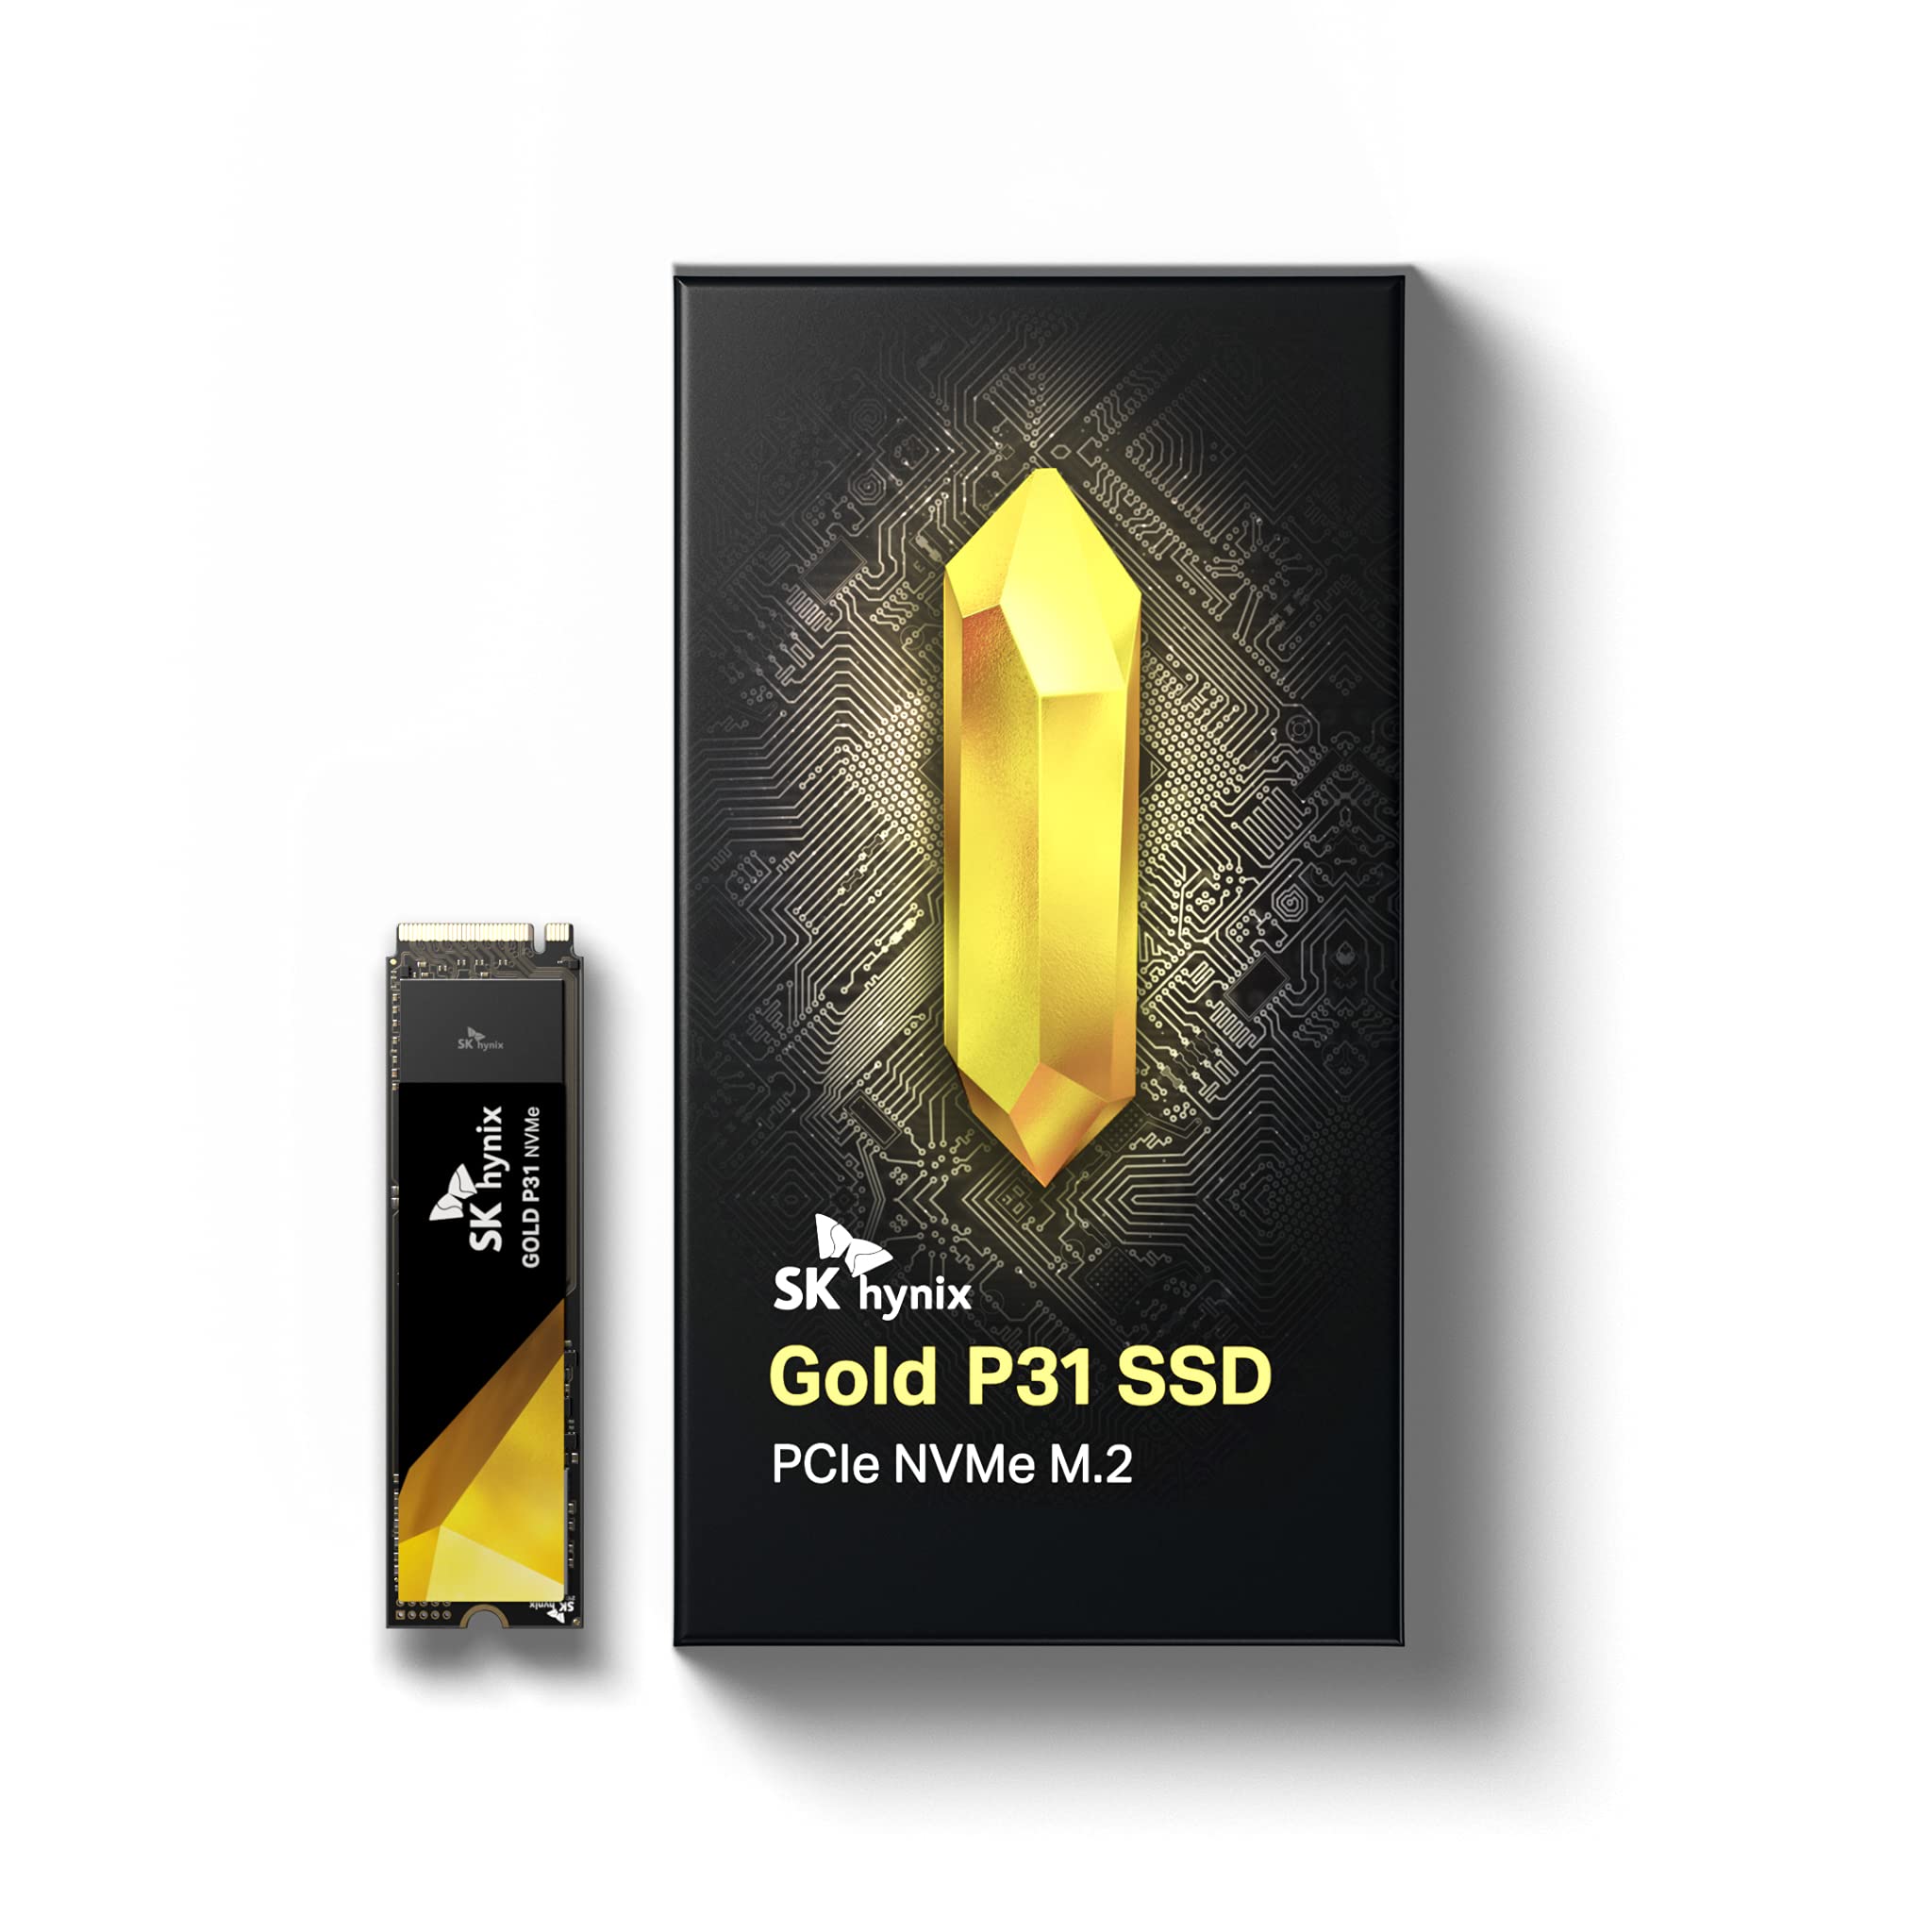 Sk Hynix Gold P31 Gen3 M.2 NVMe SSD 1TB $109.99 at SK hynix via Amazon